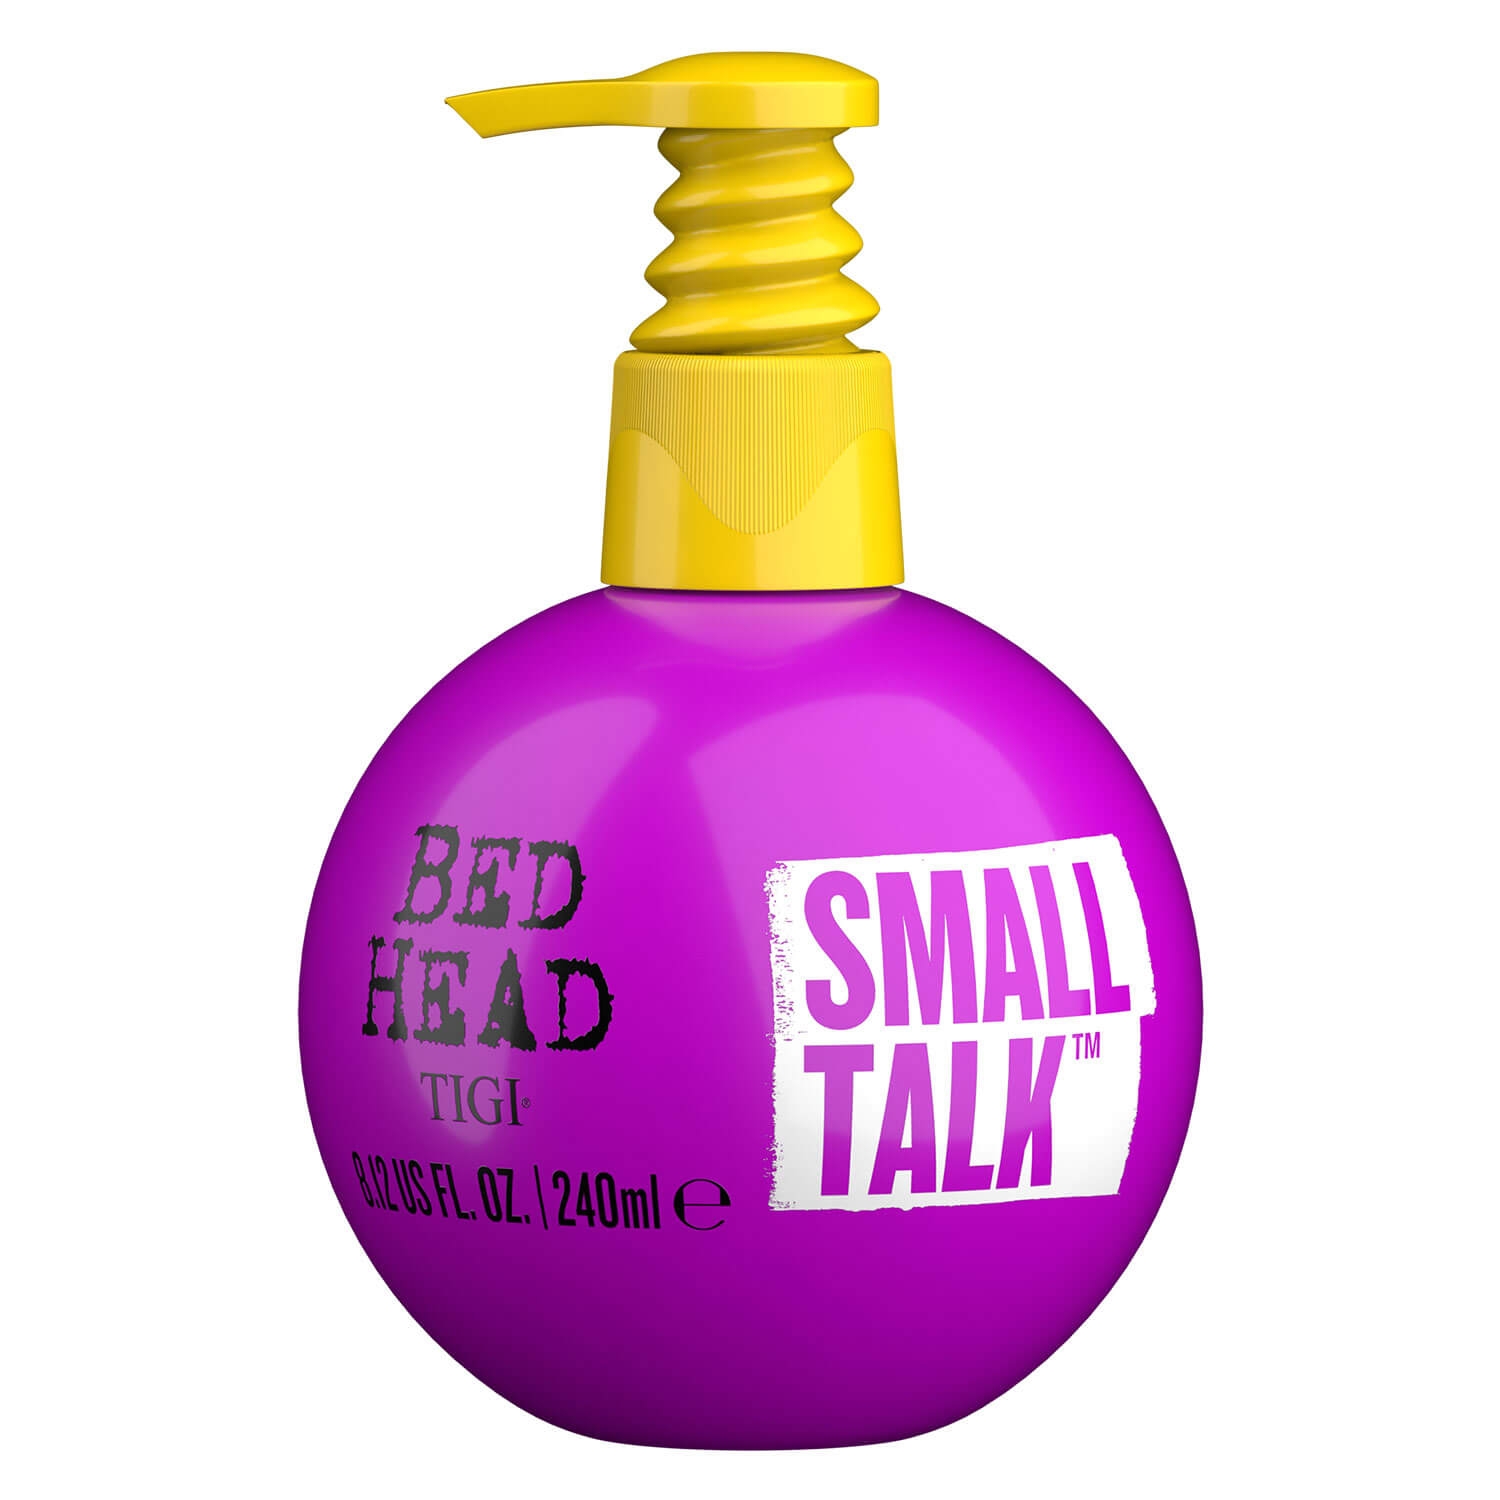 Produktbild von Bed Head - Small Talk